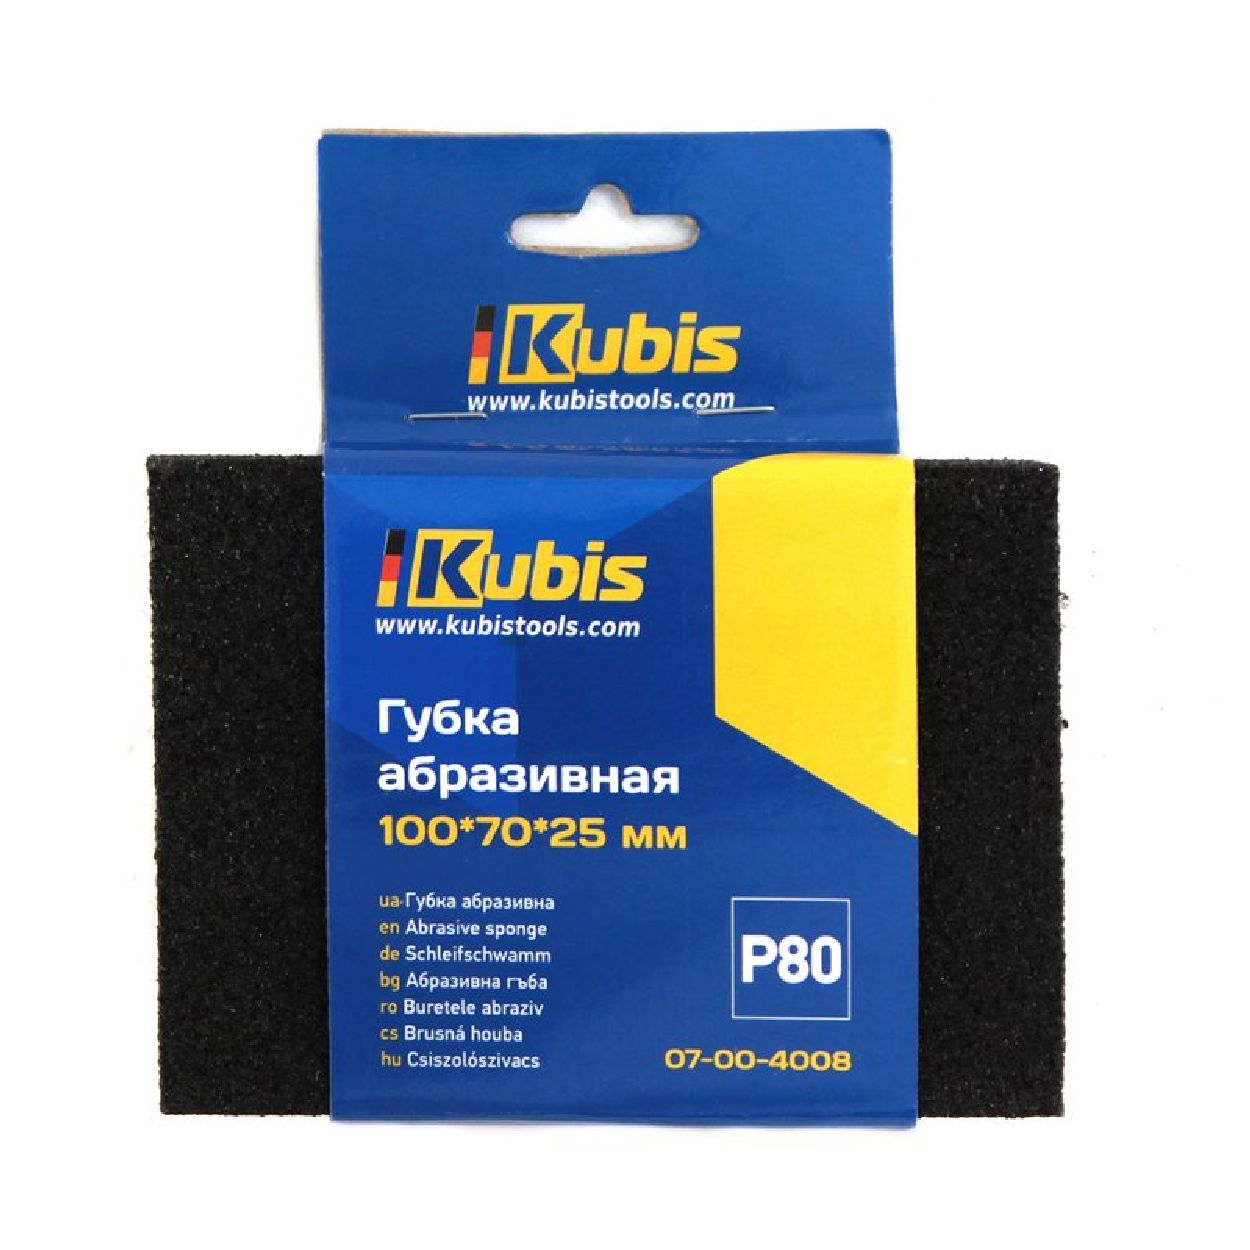 / KB07-00-4008 INBUSCO KUBIS Transparent Multifunktionswerkzeug, Schleifschwamm